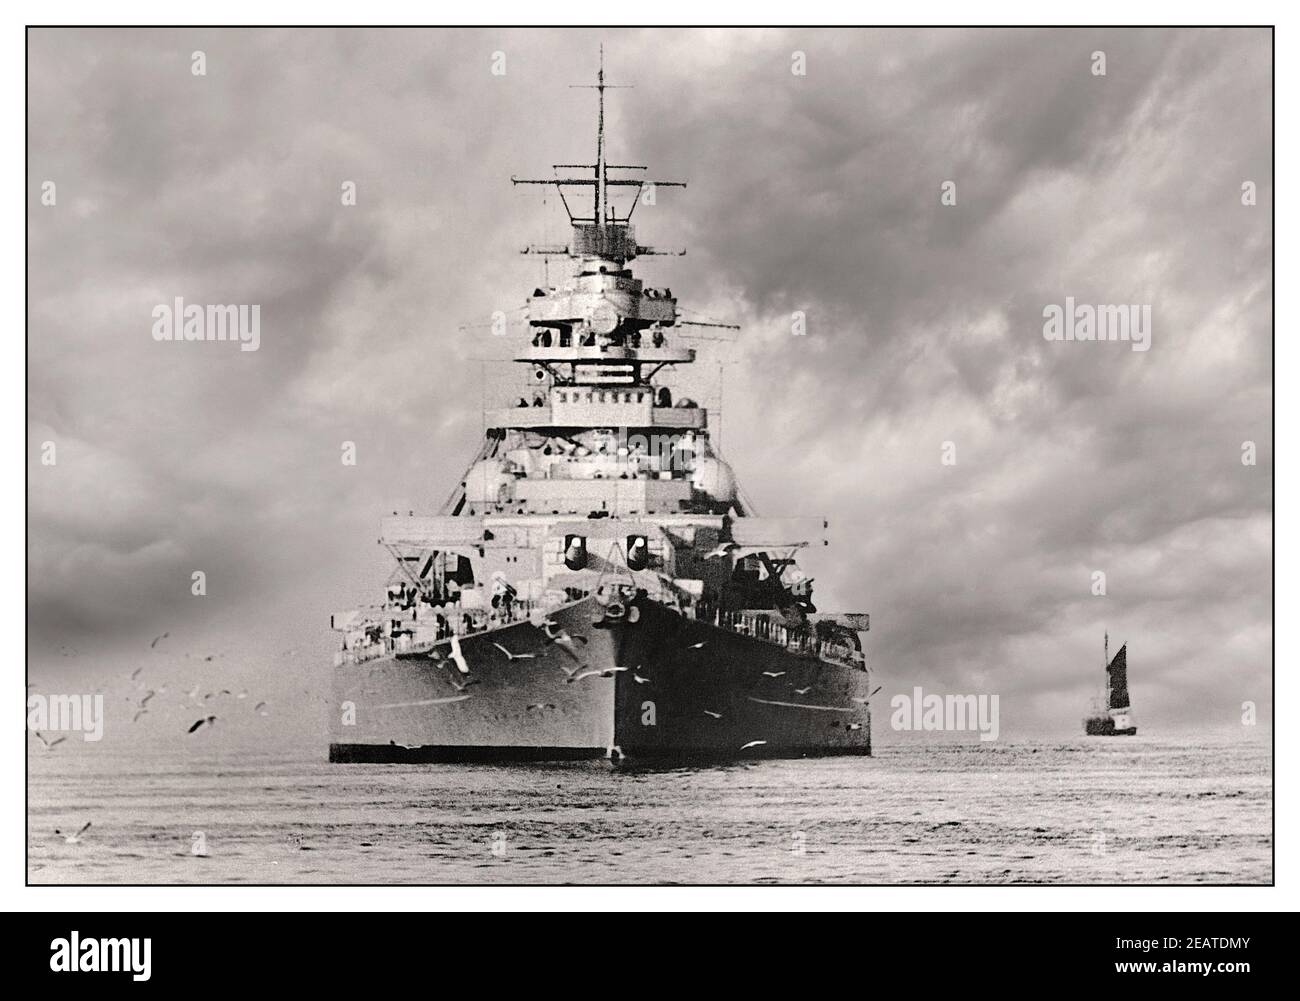 Bismarck 1940 l'Allemagne nazie Battleship WW2, le premier des deux cutleships de la classe Bismarck construit pour la Kriegsmarine de l'Allemagne nazie. Nommé d'après le chancelier Otto von Bismarck, le navire a été mis en place au chantier naval de Blohm & Voss à Hambourg en juillet 1936 et lancé en février 1939. Sabordé à la suite de dégâts de bataille incapacitants, le 27 mai 1941, dans la Seconde Guerre mondiale de l'Atlantique Nord Banque D'Images